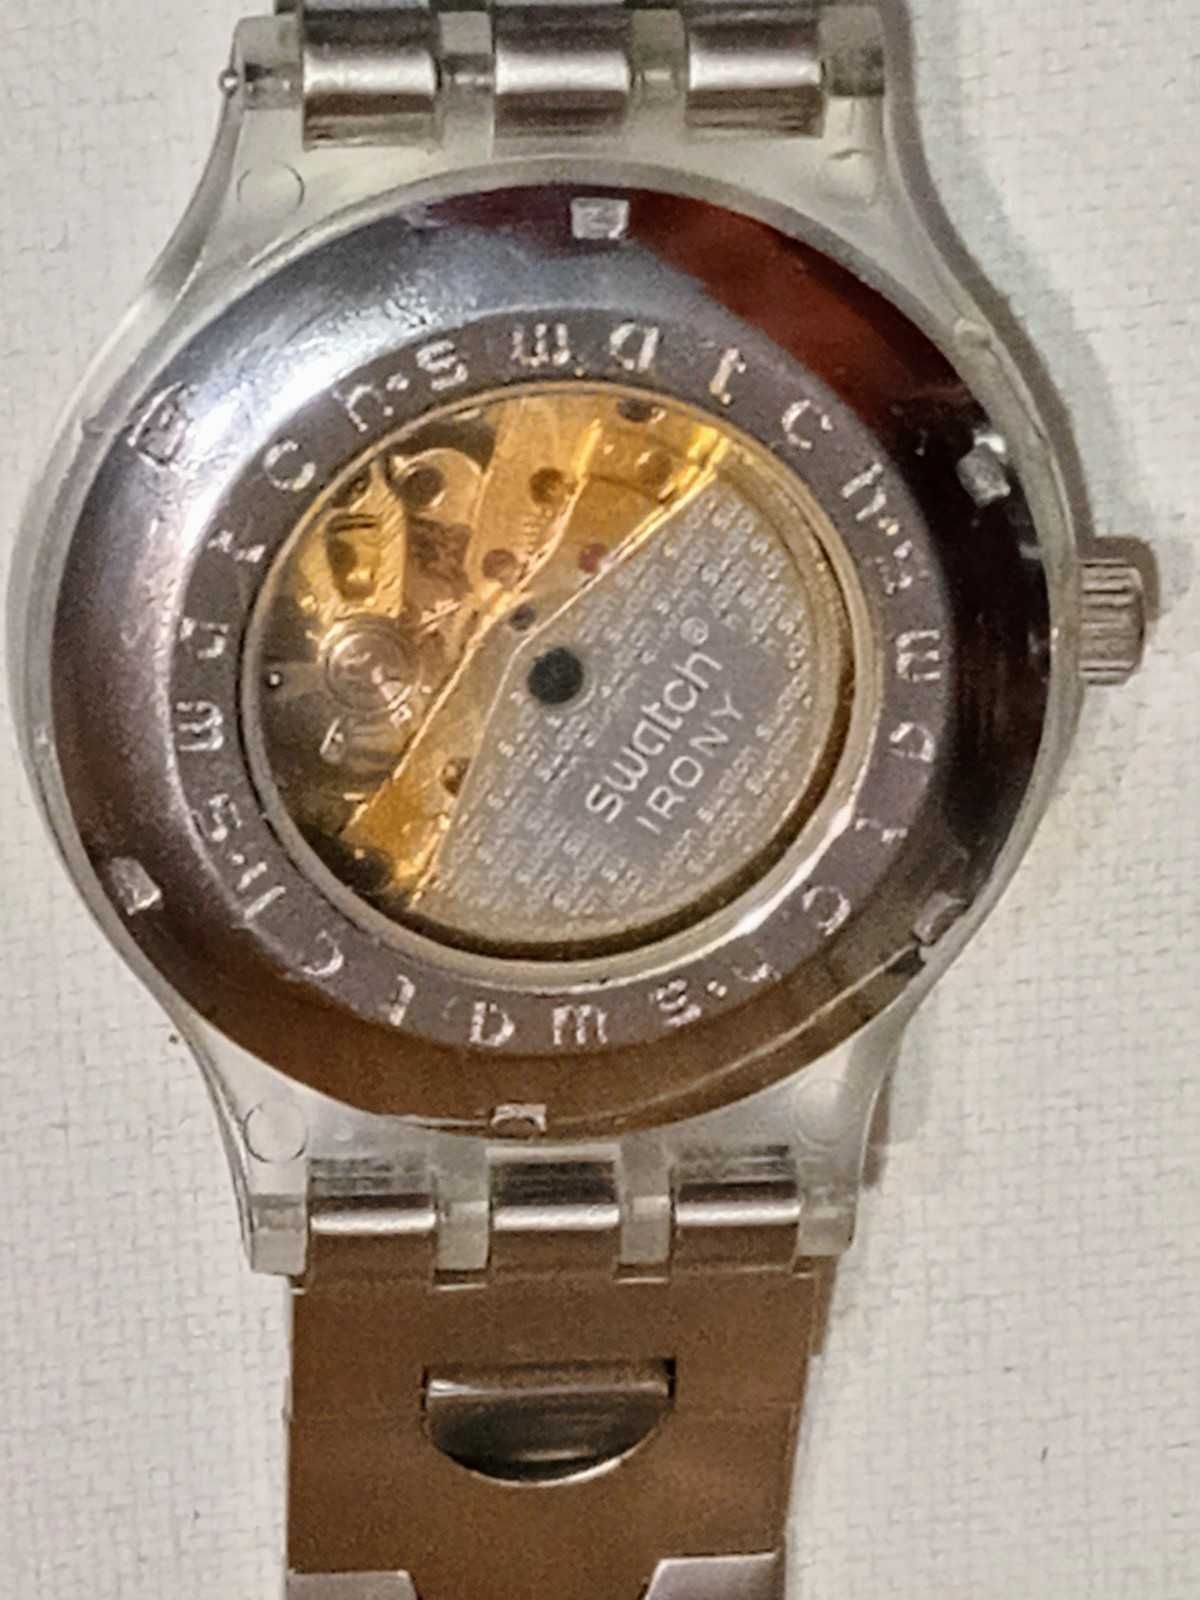 Часы механические Skeleton watch ag 2008 НА РЕМОНТ ИЛИ ЗАПЧАСТИ